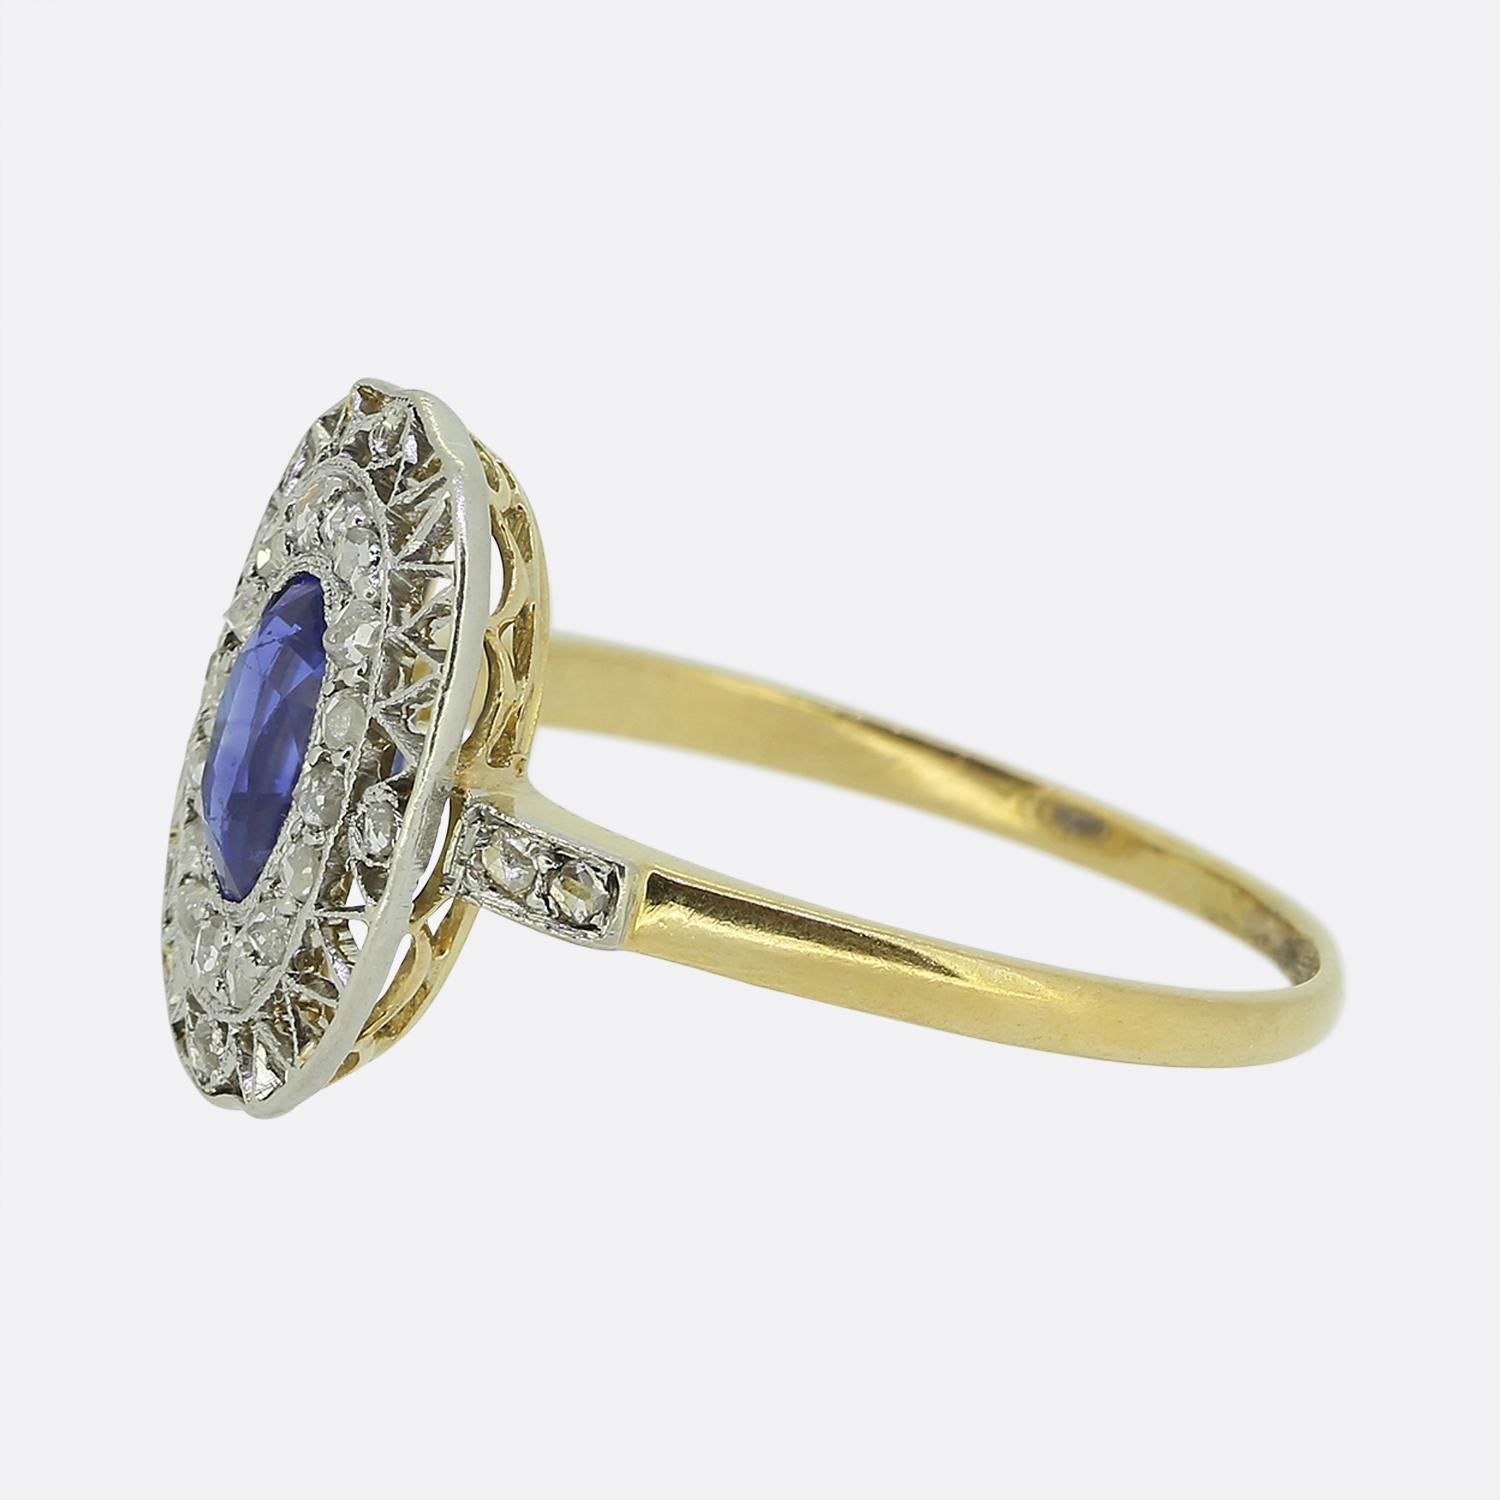 Hier haben wir einen reizvollen Saphir- und Diamantring aus der Edwardianischen Zeit. Dieses antike Stück zeigt einen einzelnen ovalen, facettierten Saphir in der Mitte des Zifferblattes. Der Hauptstein hat einen wundervollen kornblumenblauen